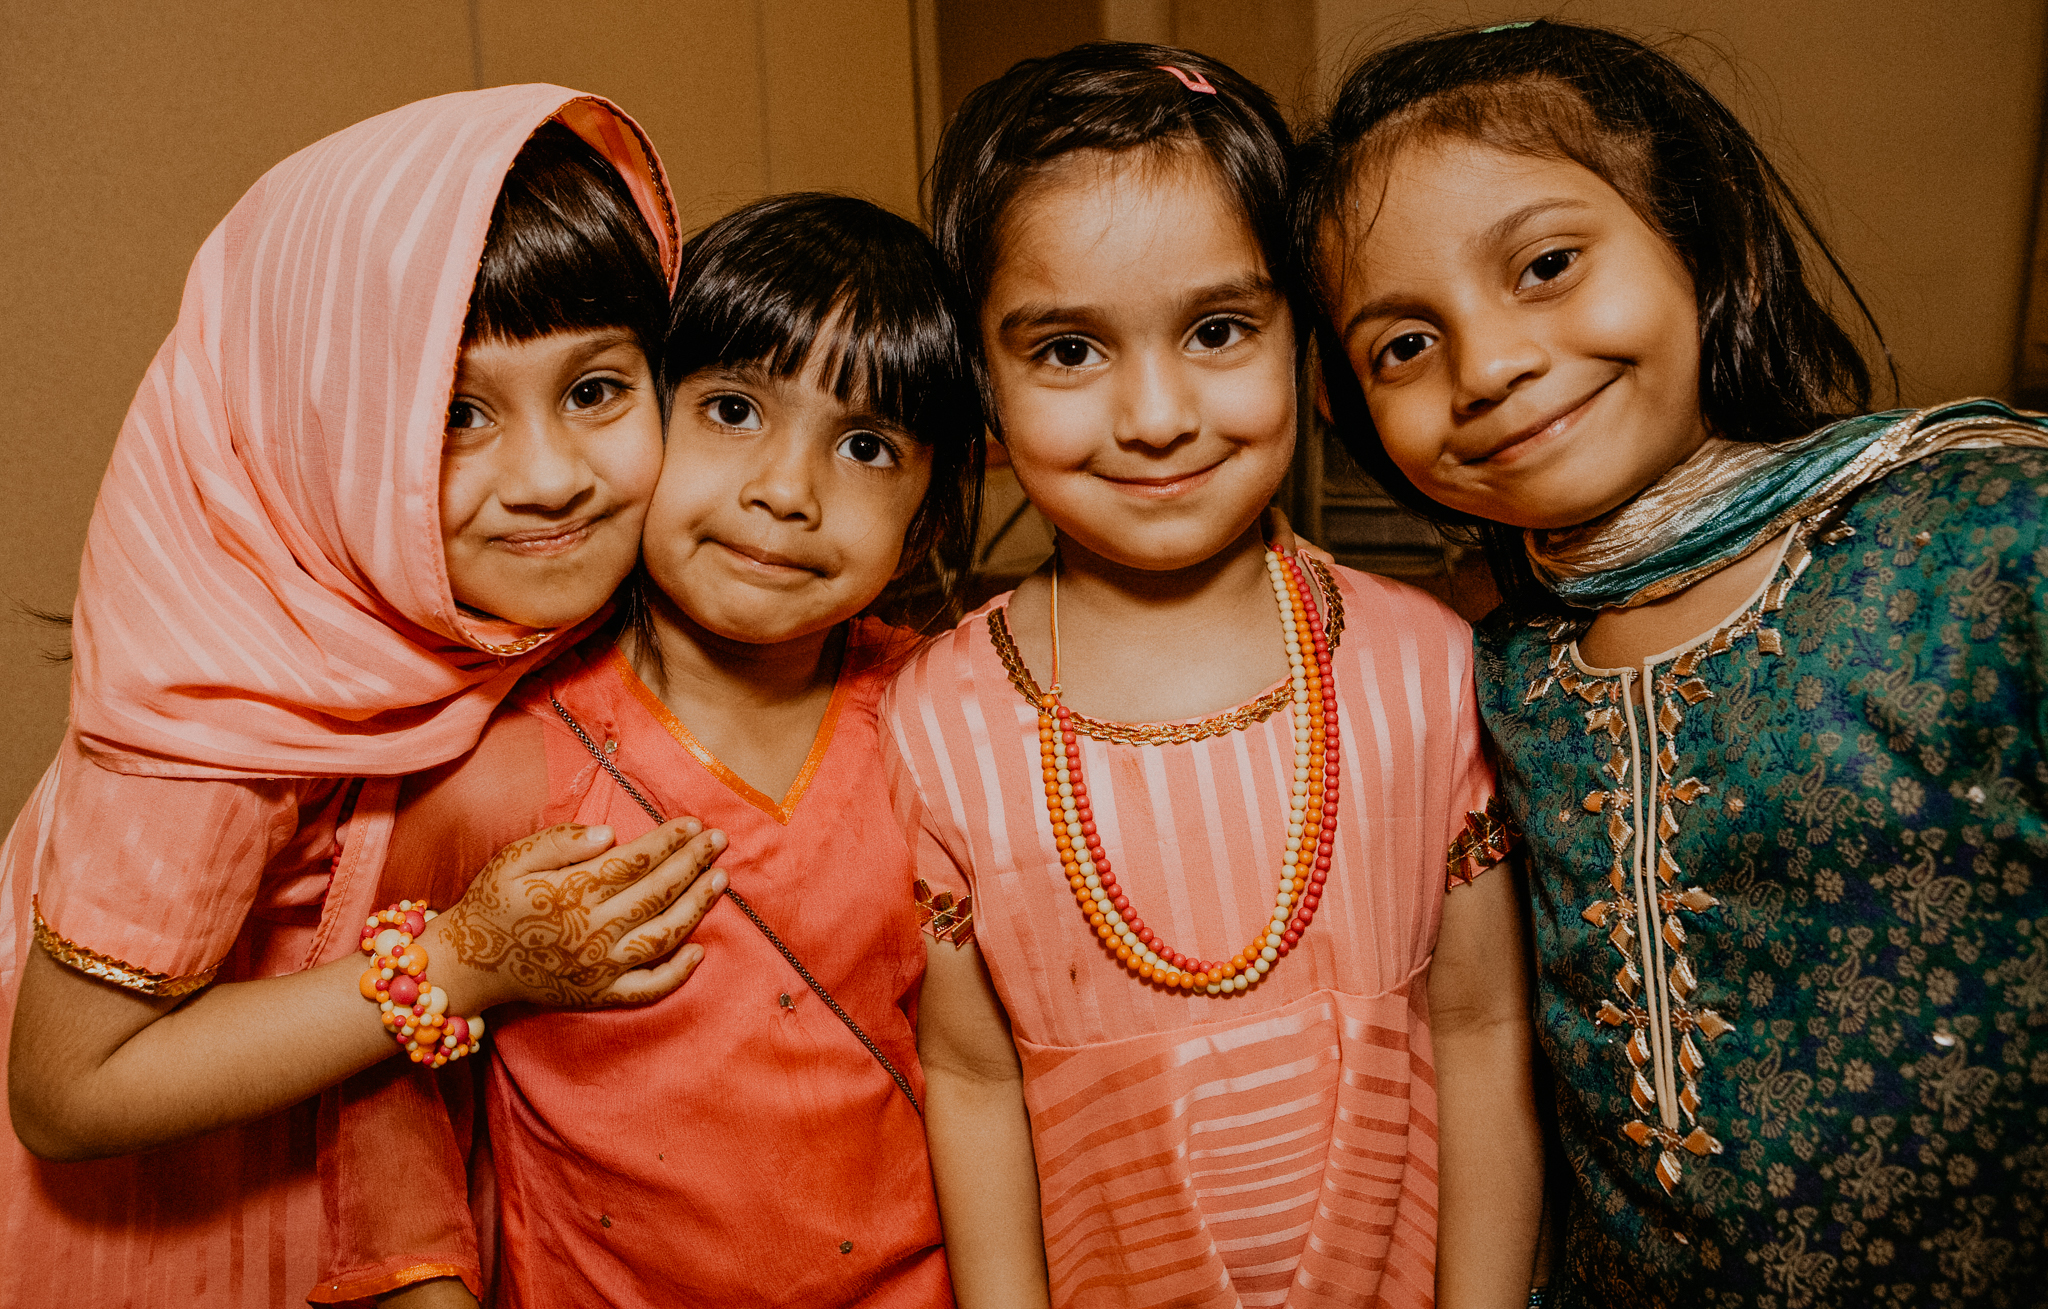 Candid photo of kids at Indian wedding Nikah